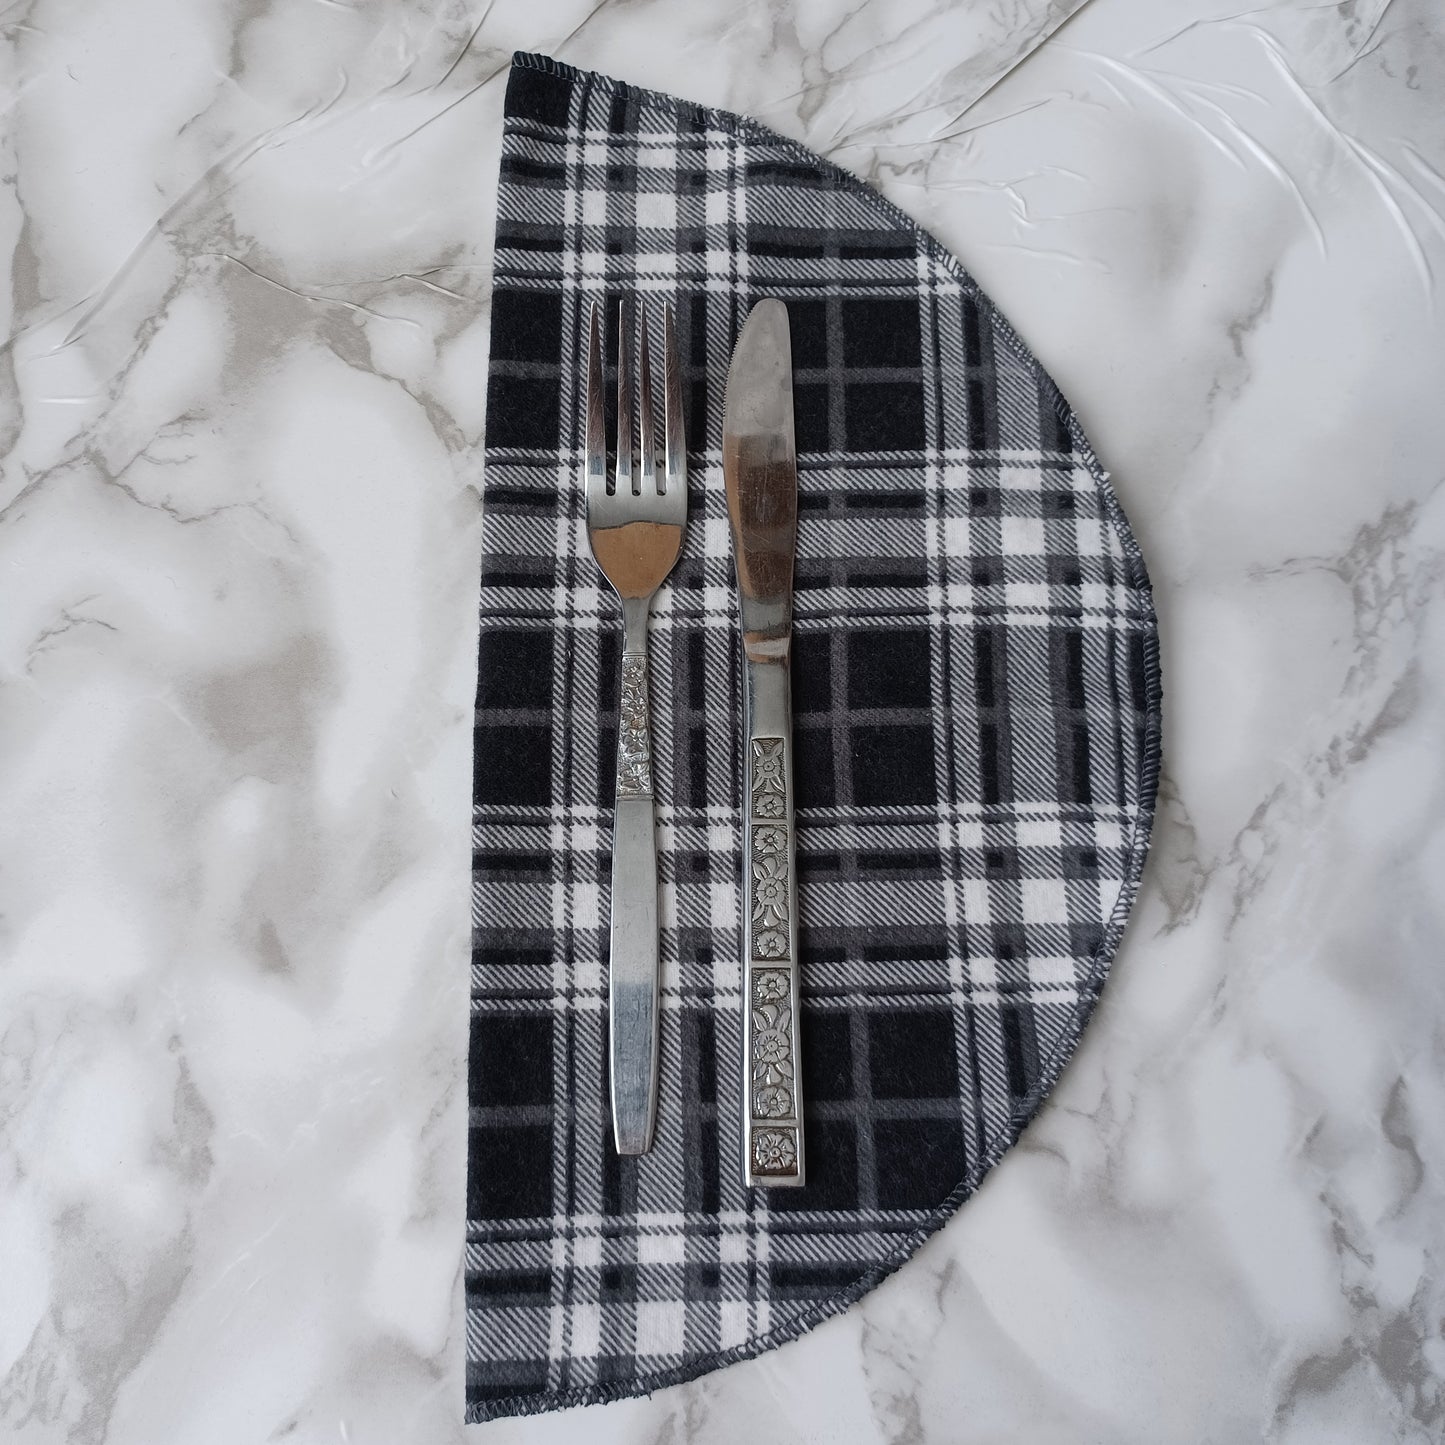 Serviettes de table et Essuie-tout-Carreauté noir, gris et blanc/Napkins and Paperless towels-Black, gray and white checkered